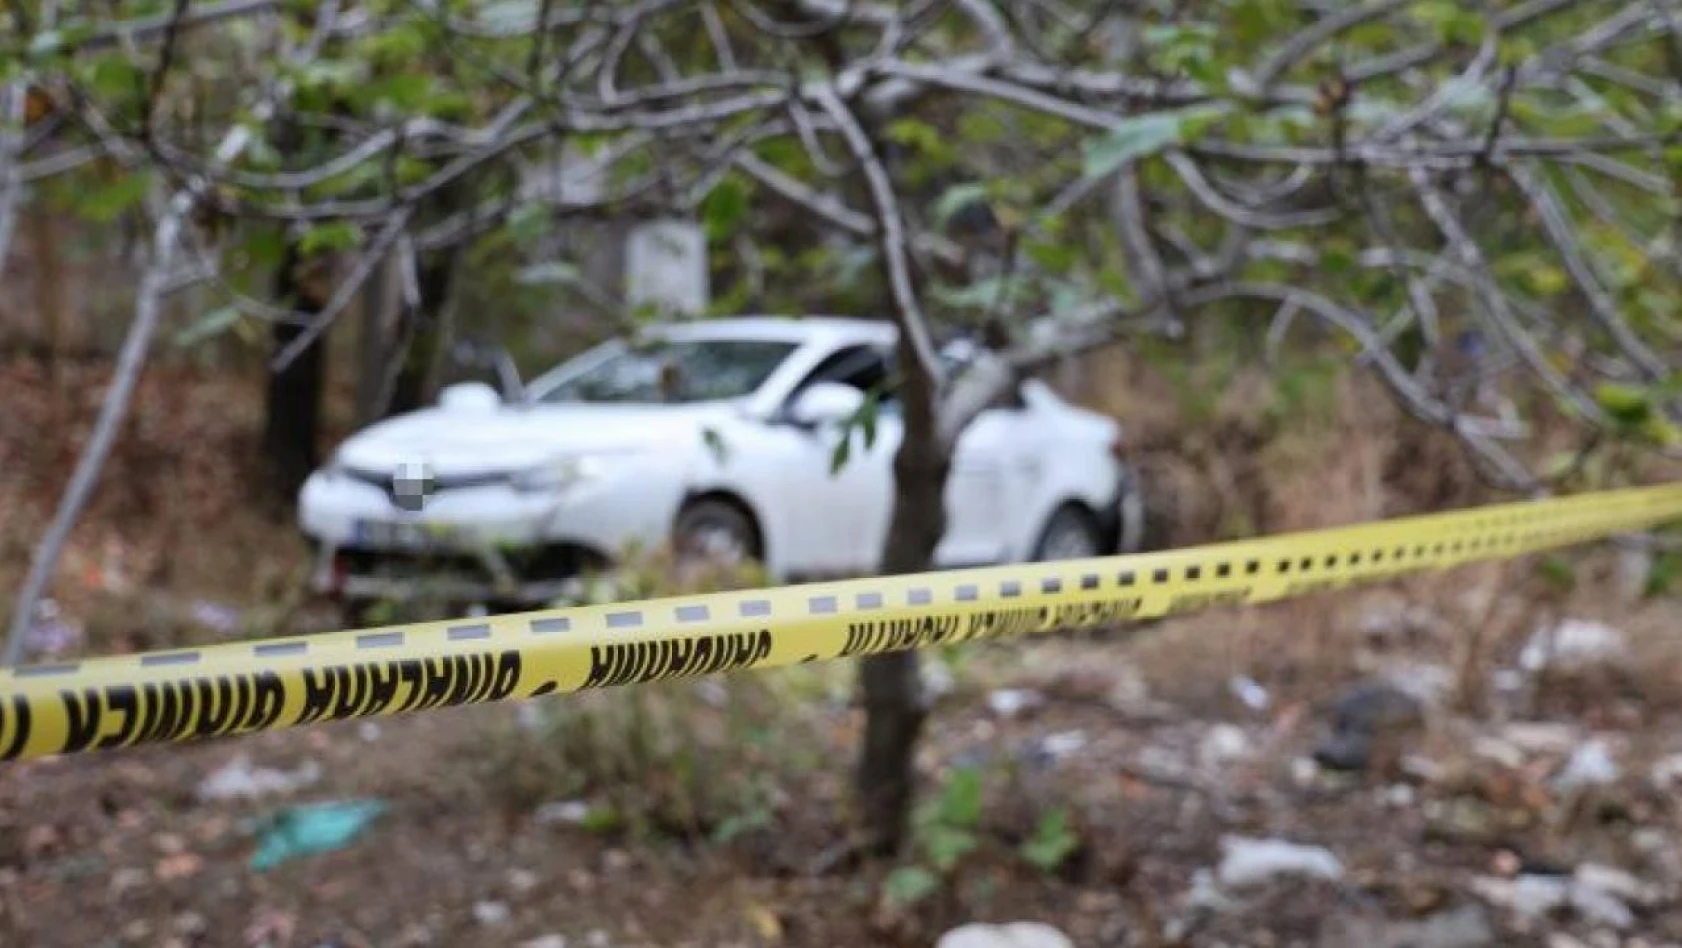 Kahramanmaraş'ta silahlı kavga: 1 ölü